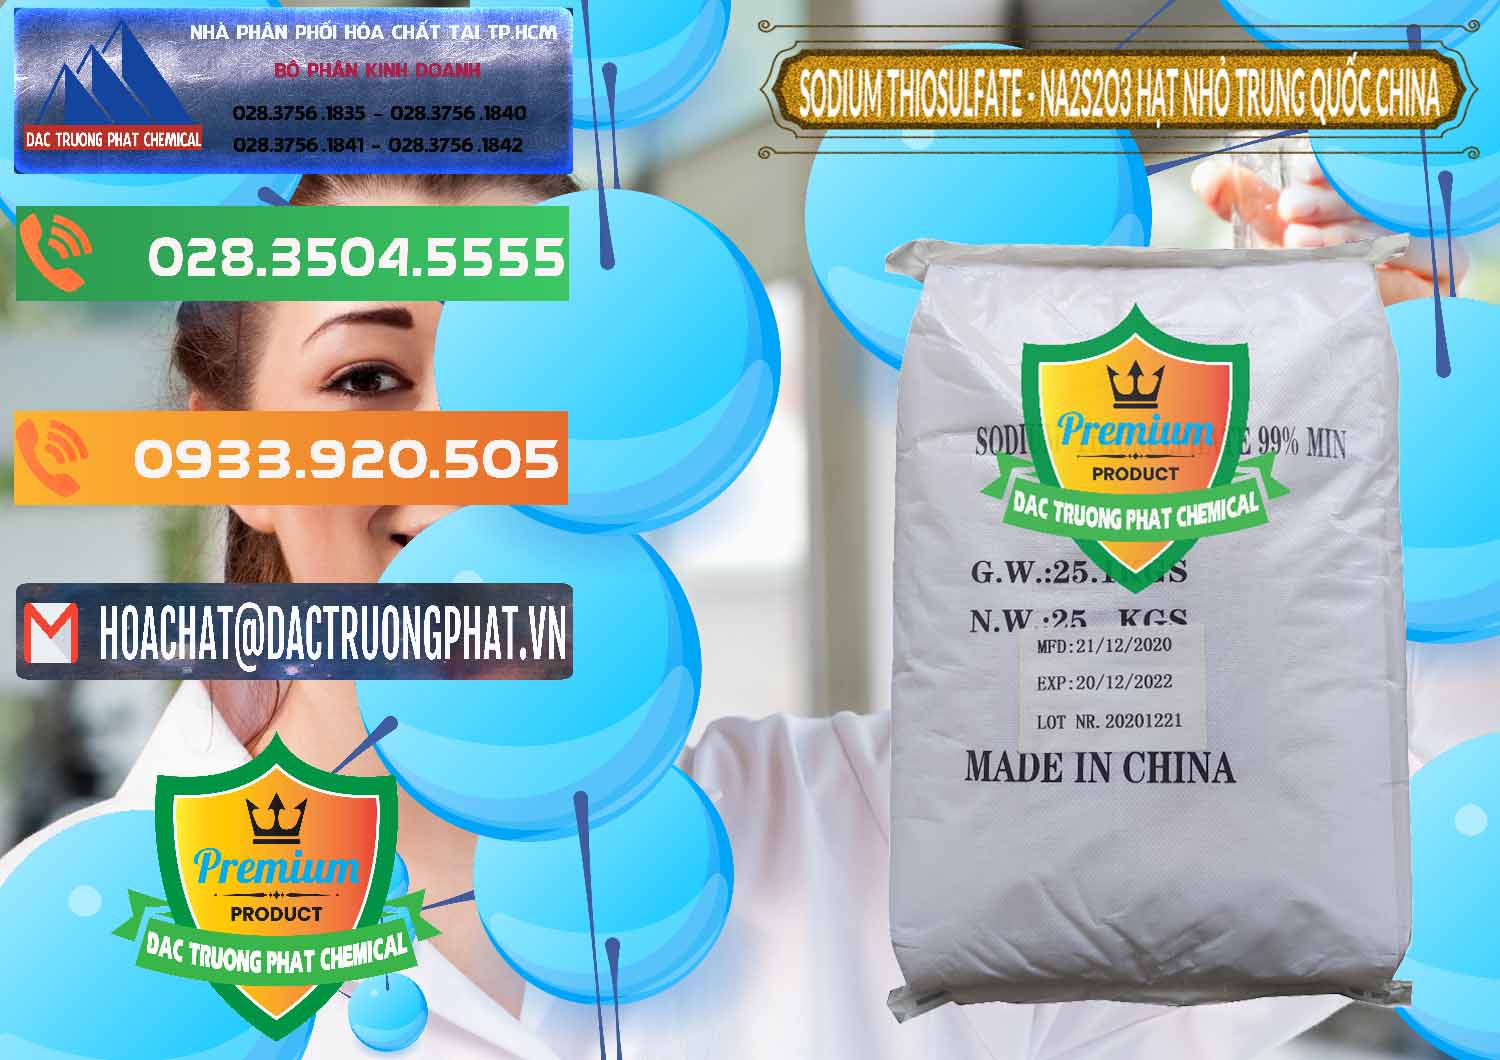 Đơn vị bán _ cung cấp Sodium Thiosulfate - NA2S2O3 Hạt Nhỏ Trung Quốc China - 0204 - Nơi phân phối ( kinh doanh ) hóa chất tại TP.HCM - hoachatxulynuoc.com.vn